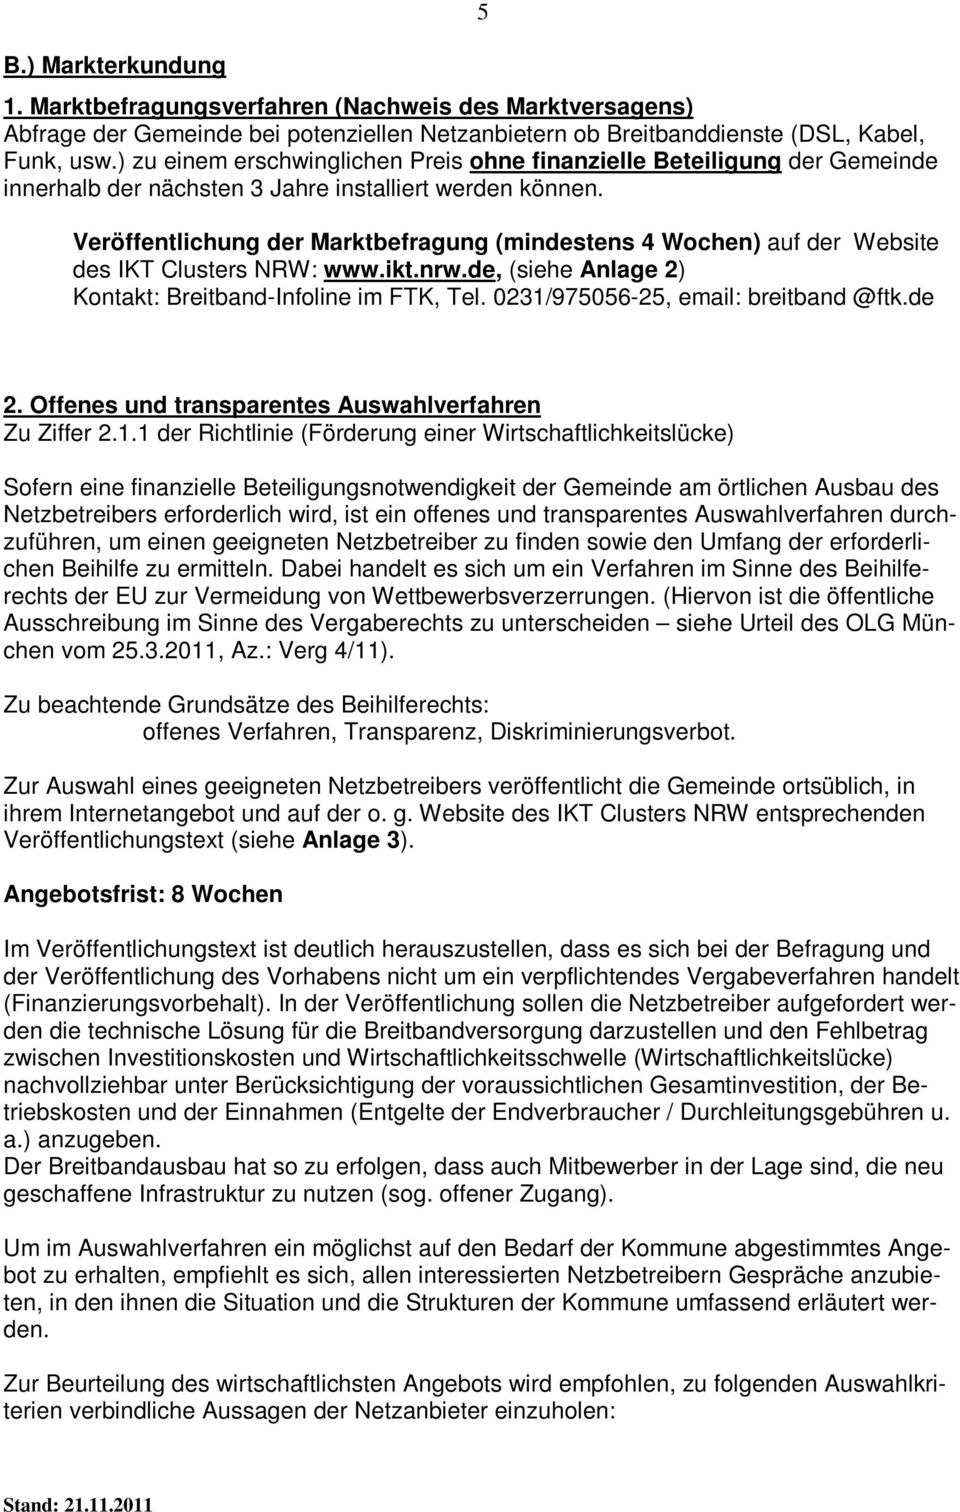 5 Veröffentlichung der Marktbefragung (mindestens 4 Wochen) auf der Website des IKT Clusters NRW: www.ikt.nrw.de, (siehe Anlage 2) Kontakt: Breitband-Infoline im FTK, Tel.